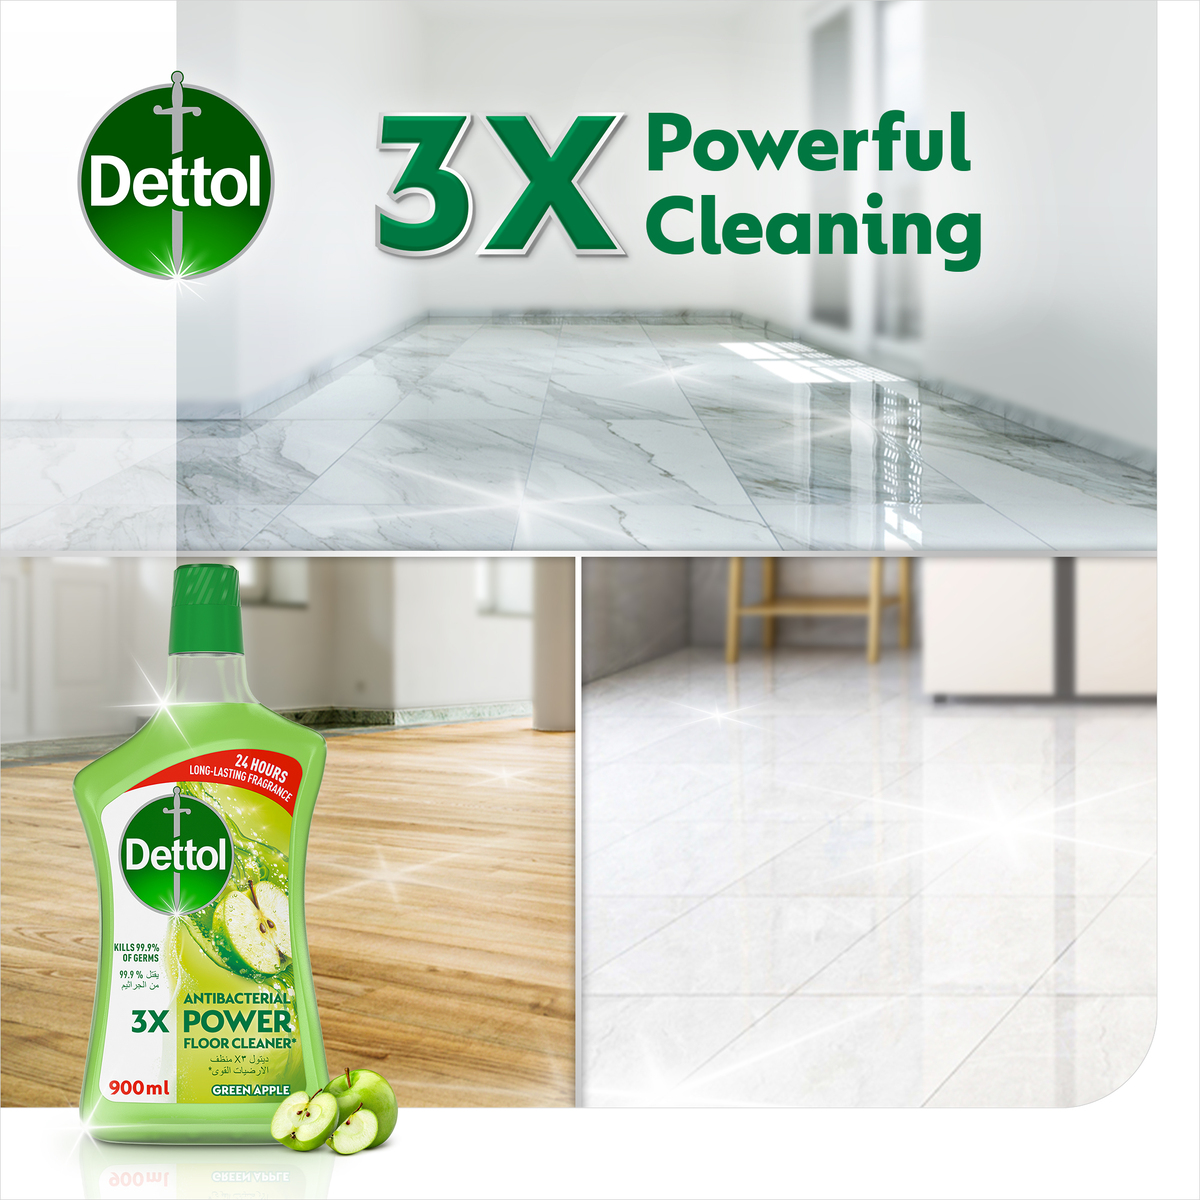 Dettol Green Apple Antibacterial Power Floor Cleaner 900ml